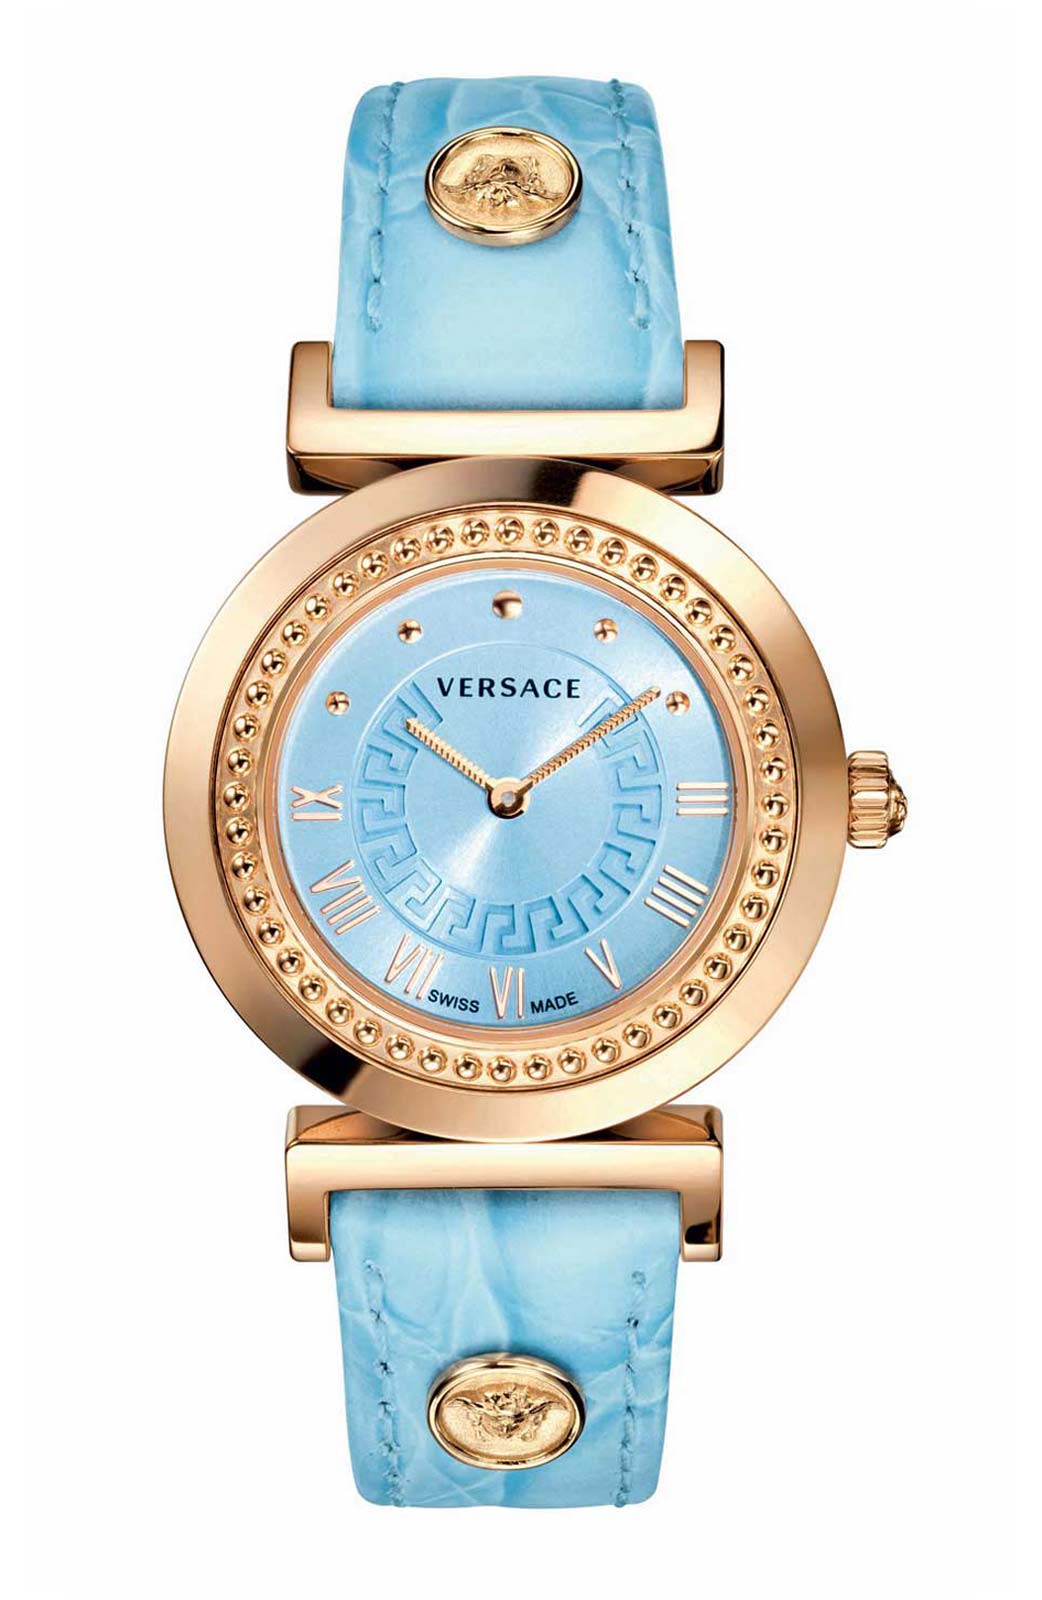 Versace QUARTZ watch 762.3 LIGHT BLUE CALF STRAP